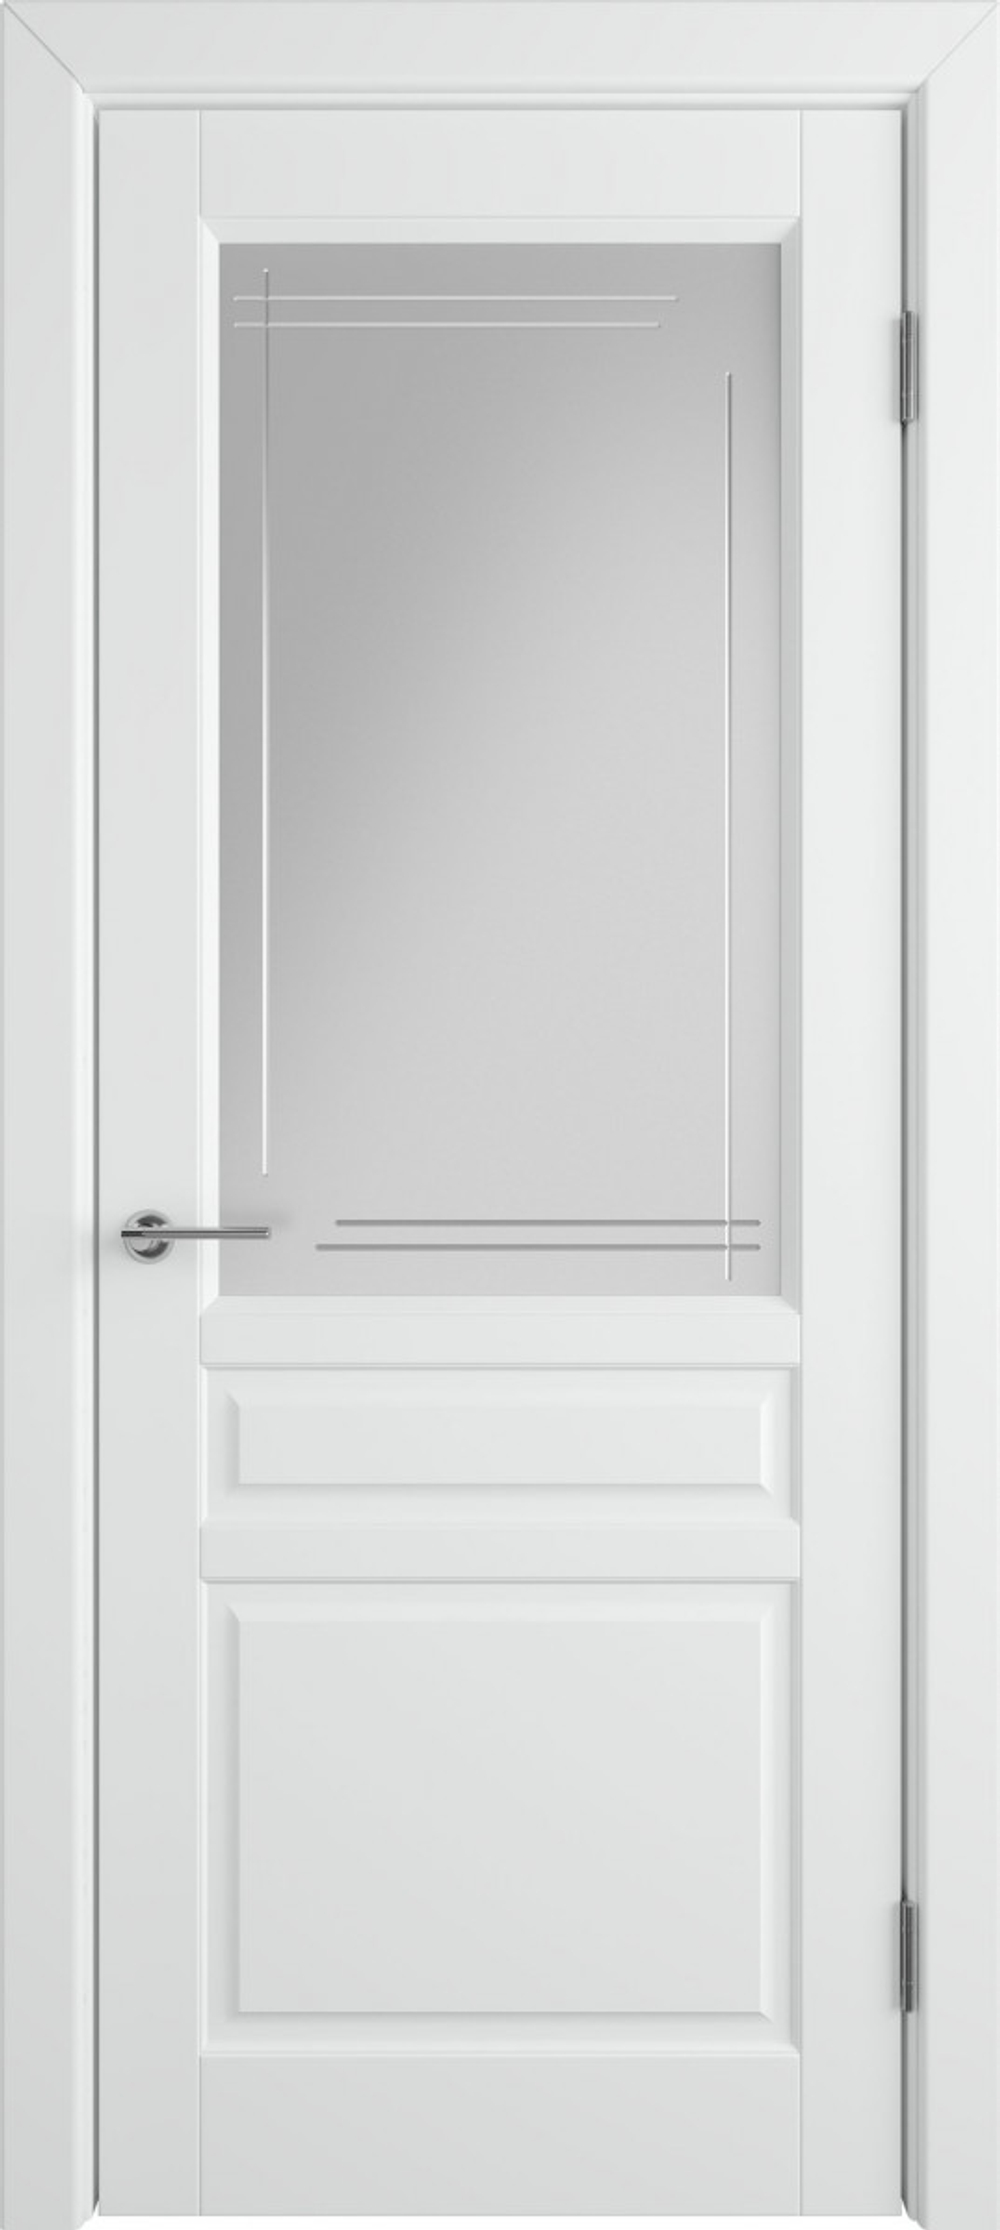 Межкомнатная дверь  VFD (ВФД)  Stockholm (Стокгольм) Polar (эмаль белая) стекло гравировка